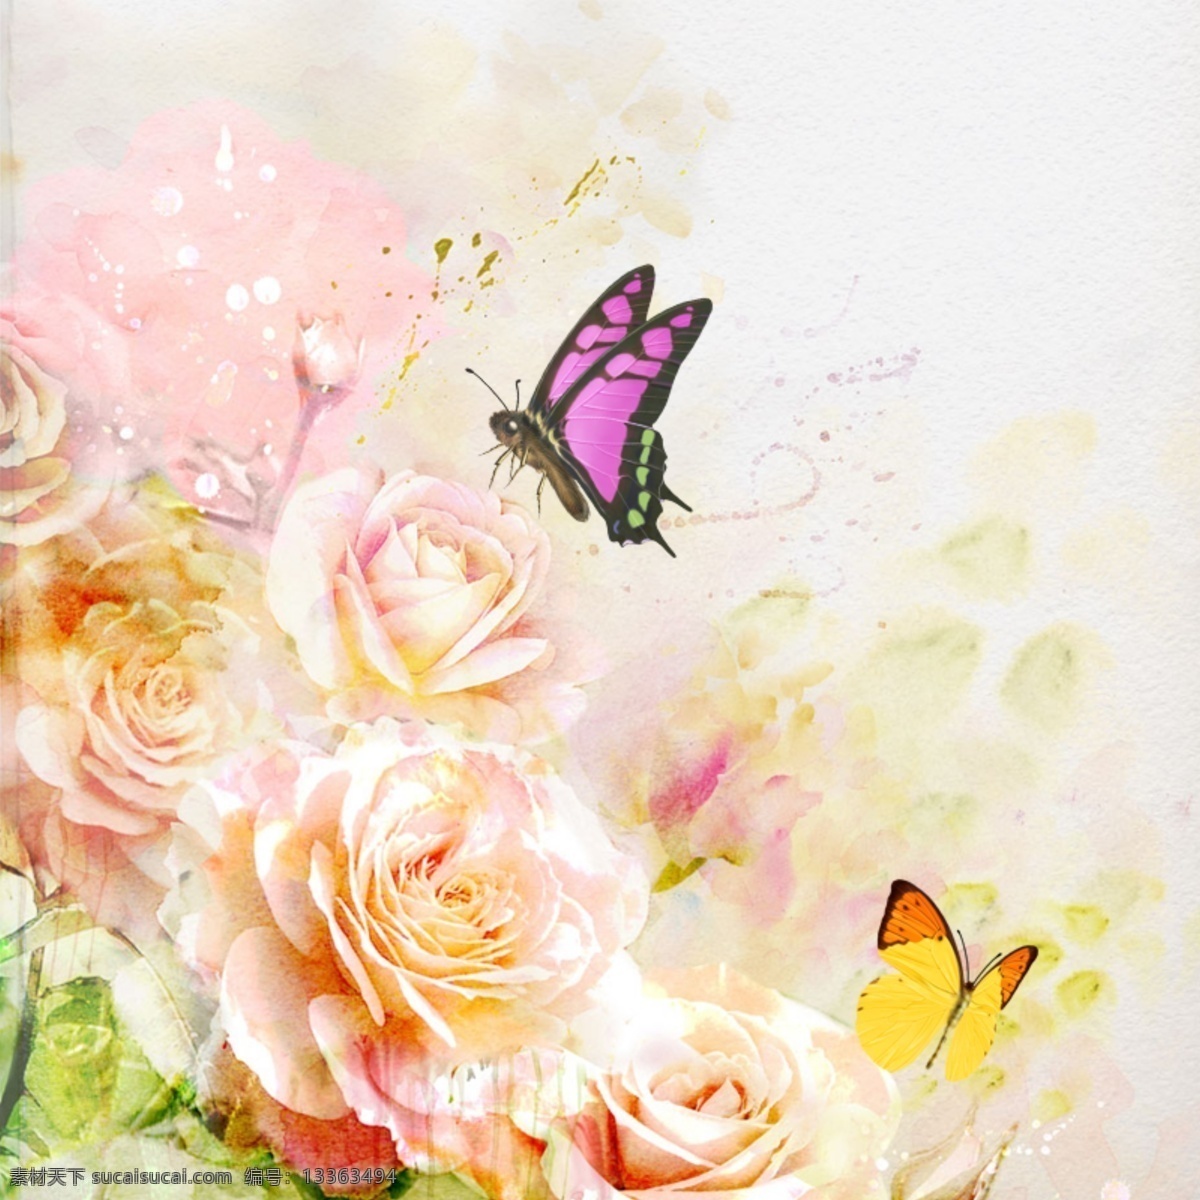 唯美 花朵 背景 图 水彩画 简约 蝴蝶 女装 温馨 浪漫 白色